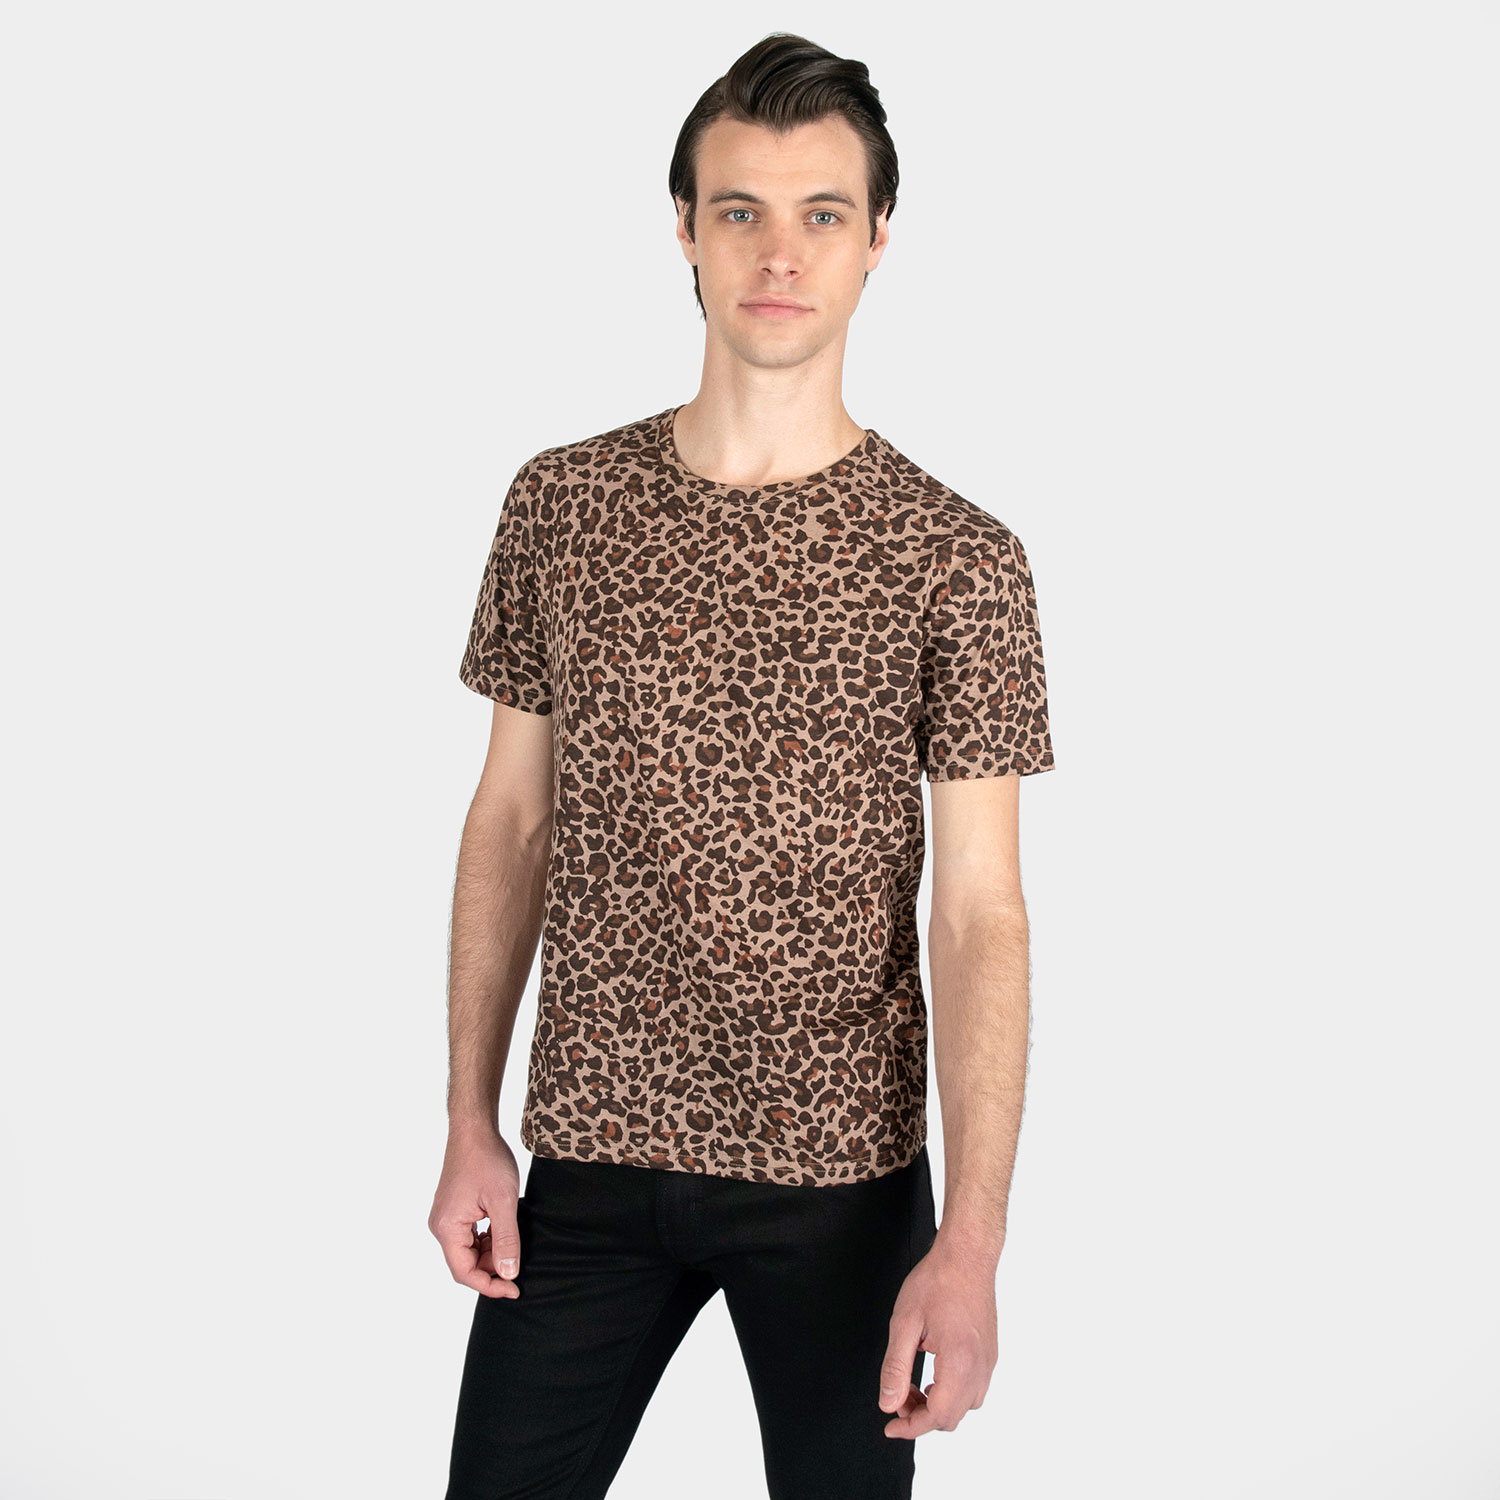 Tilbageholde Fancy kjole gear Jax - Leopard Print T-Shirt | Straight To Hell Apparel